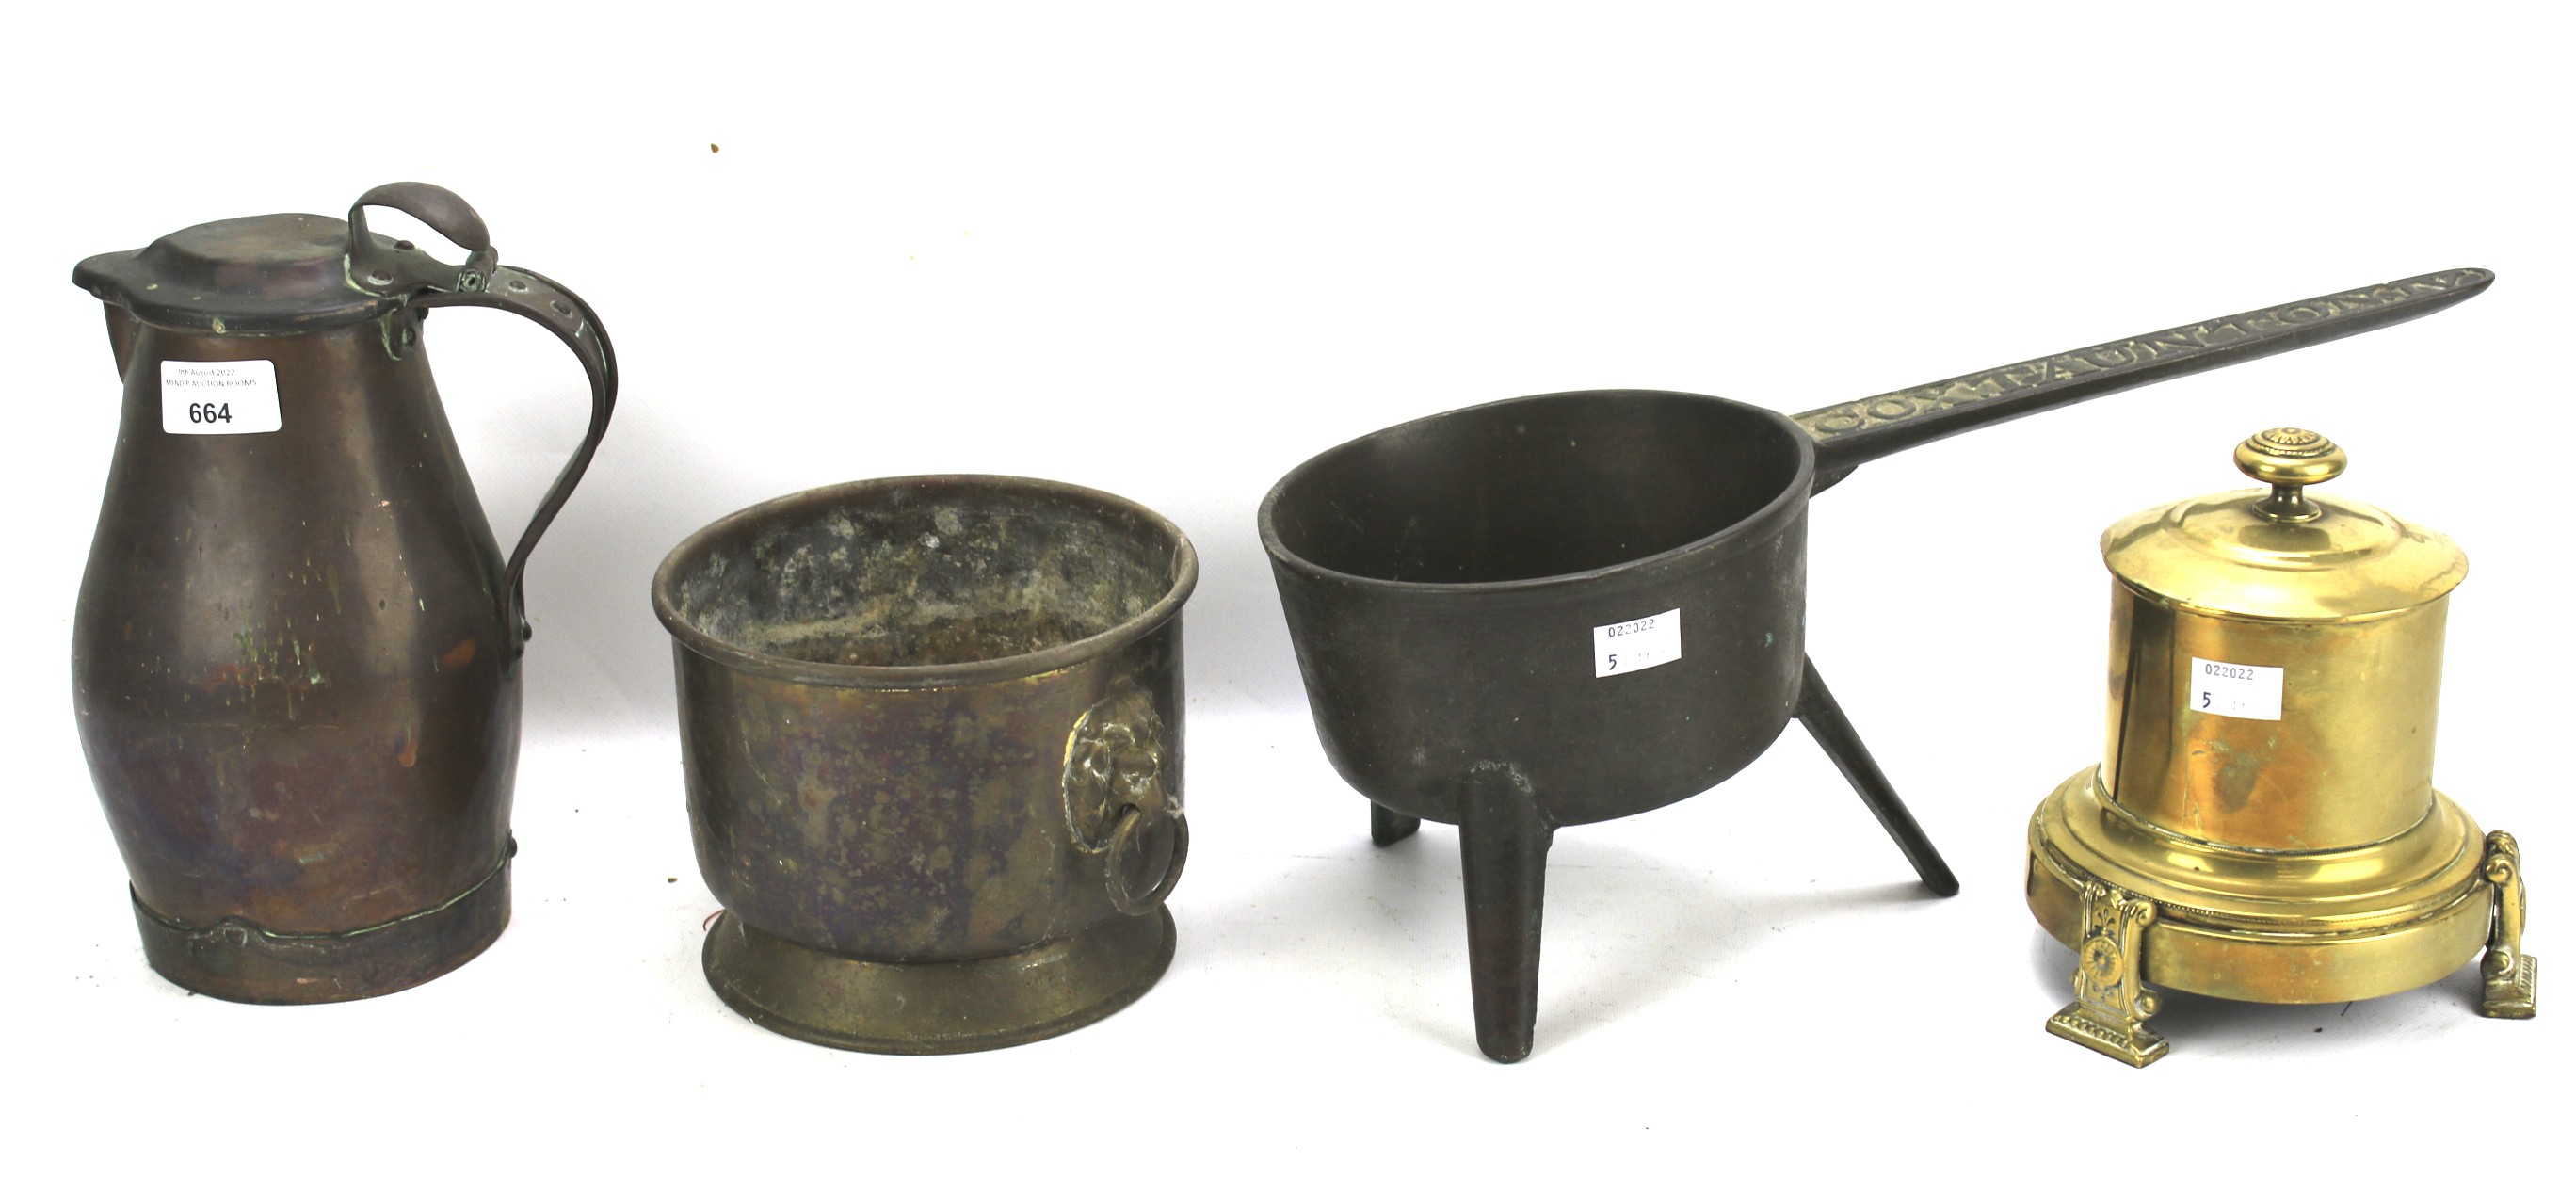 A Cox Taunton trivet pan and an assortment of metalware.